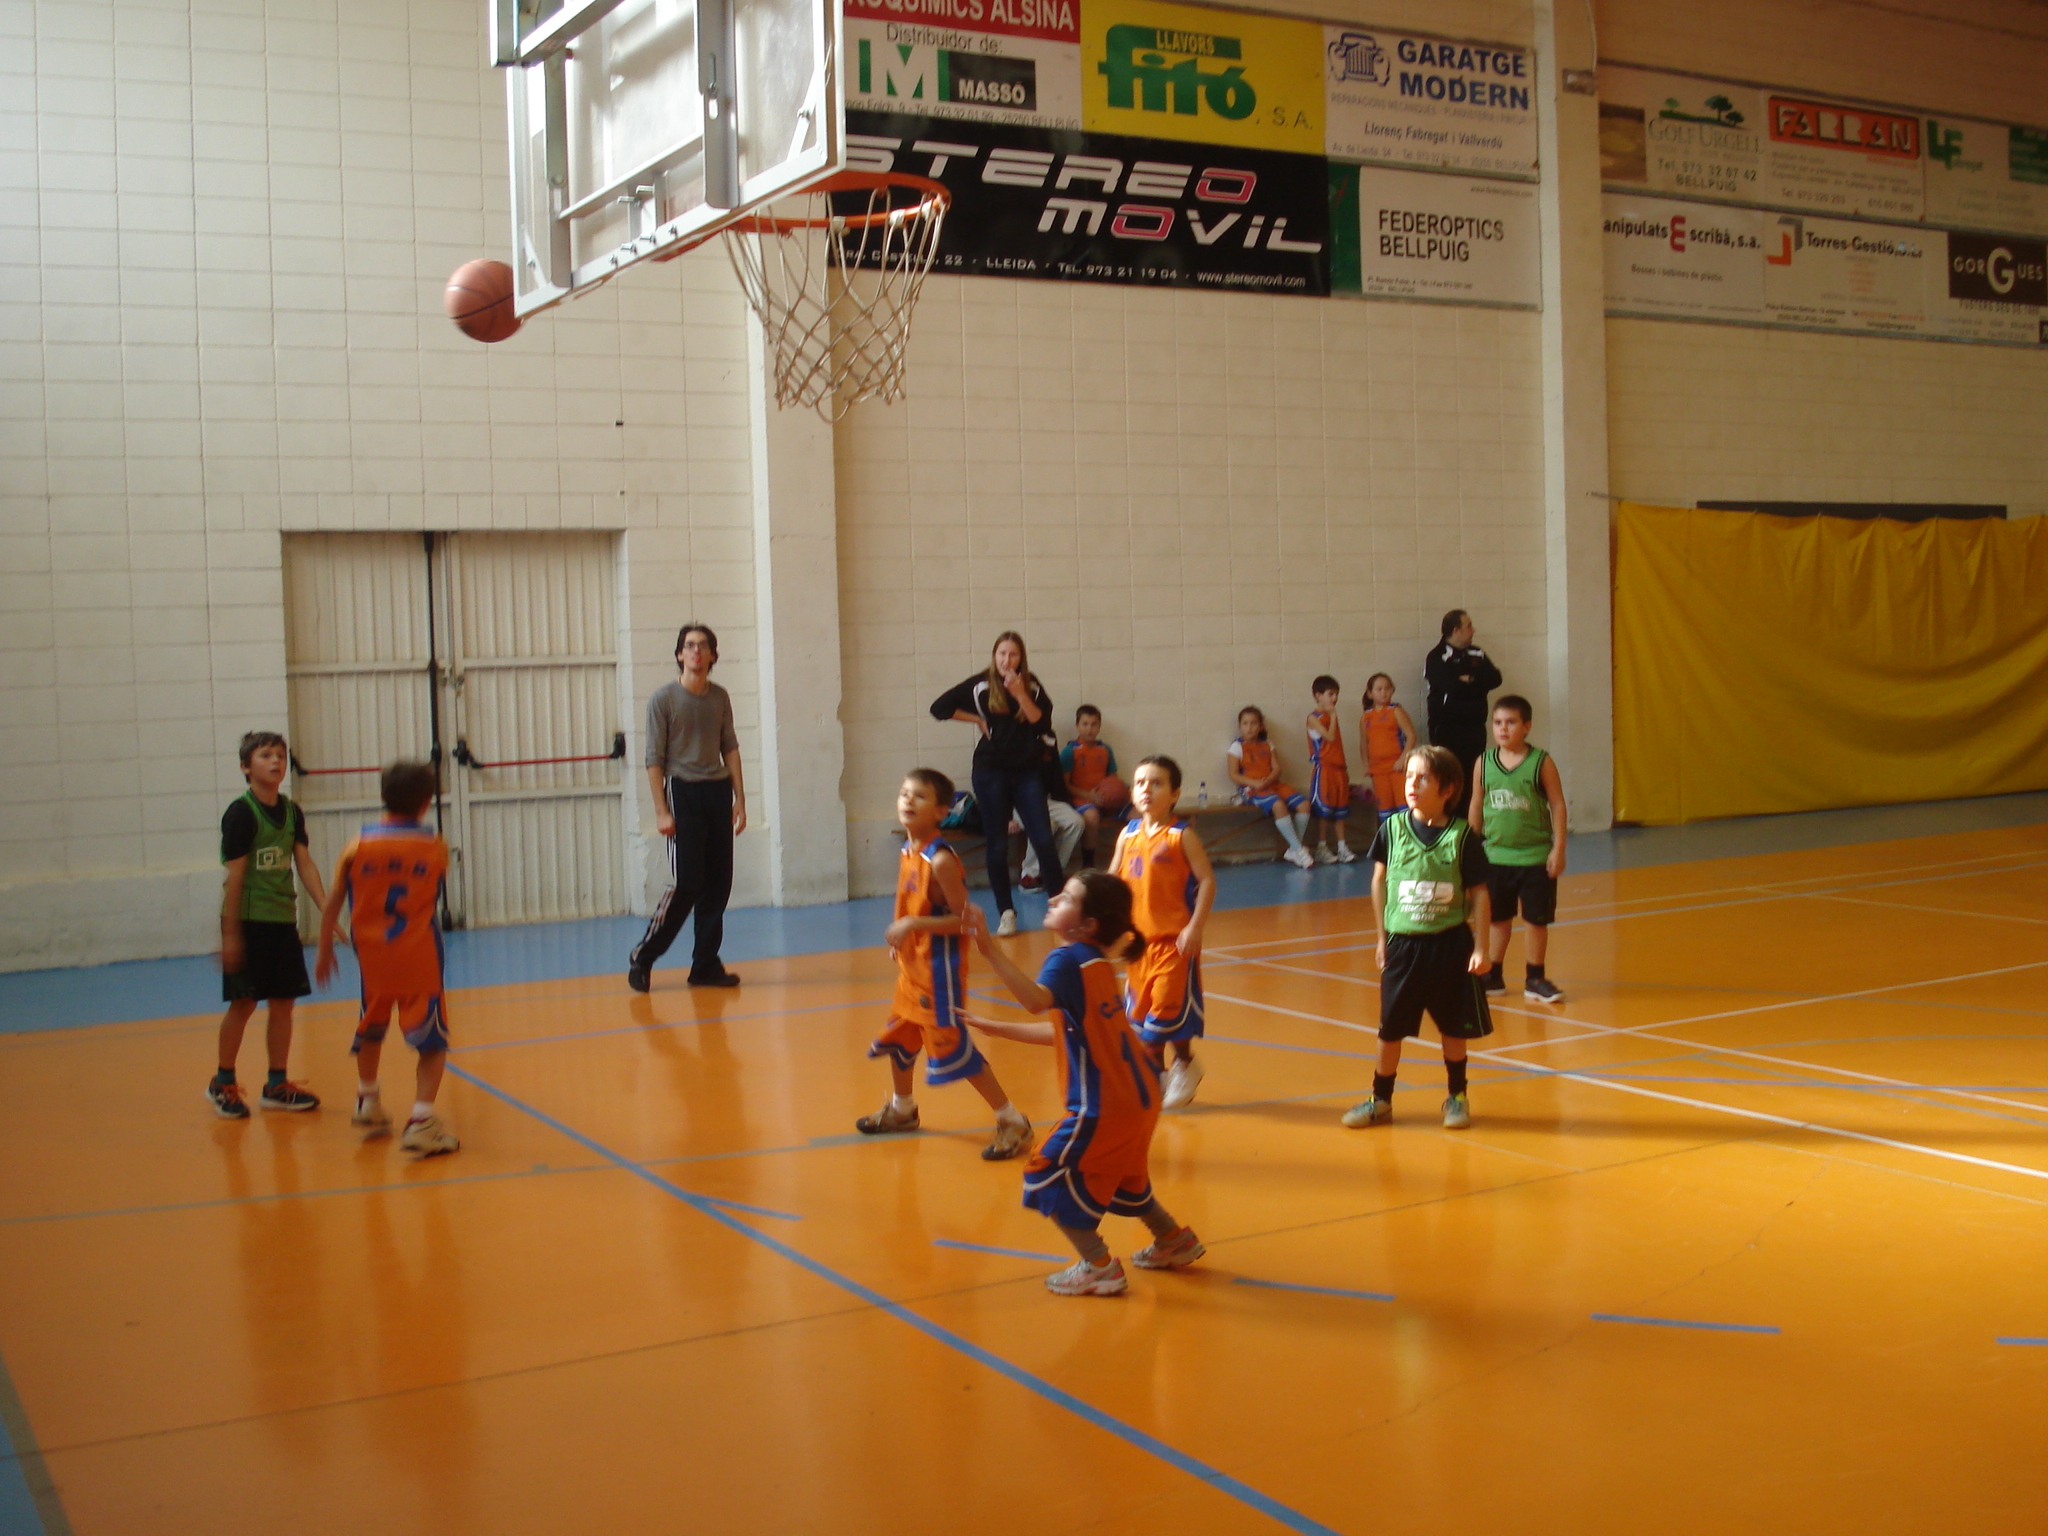 Segona Trobada Escoles de Bàsquet Territorial Lleida a Bellpuig. Novembre 2013.